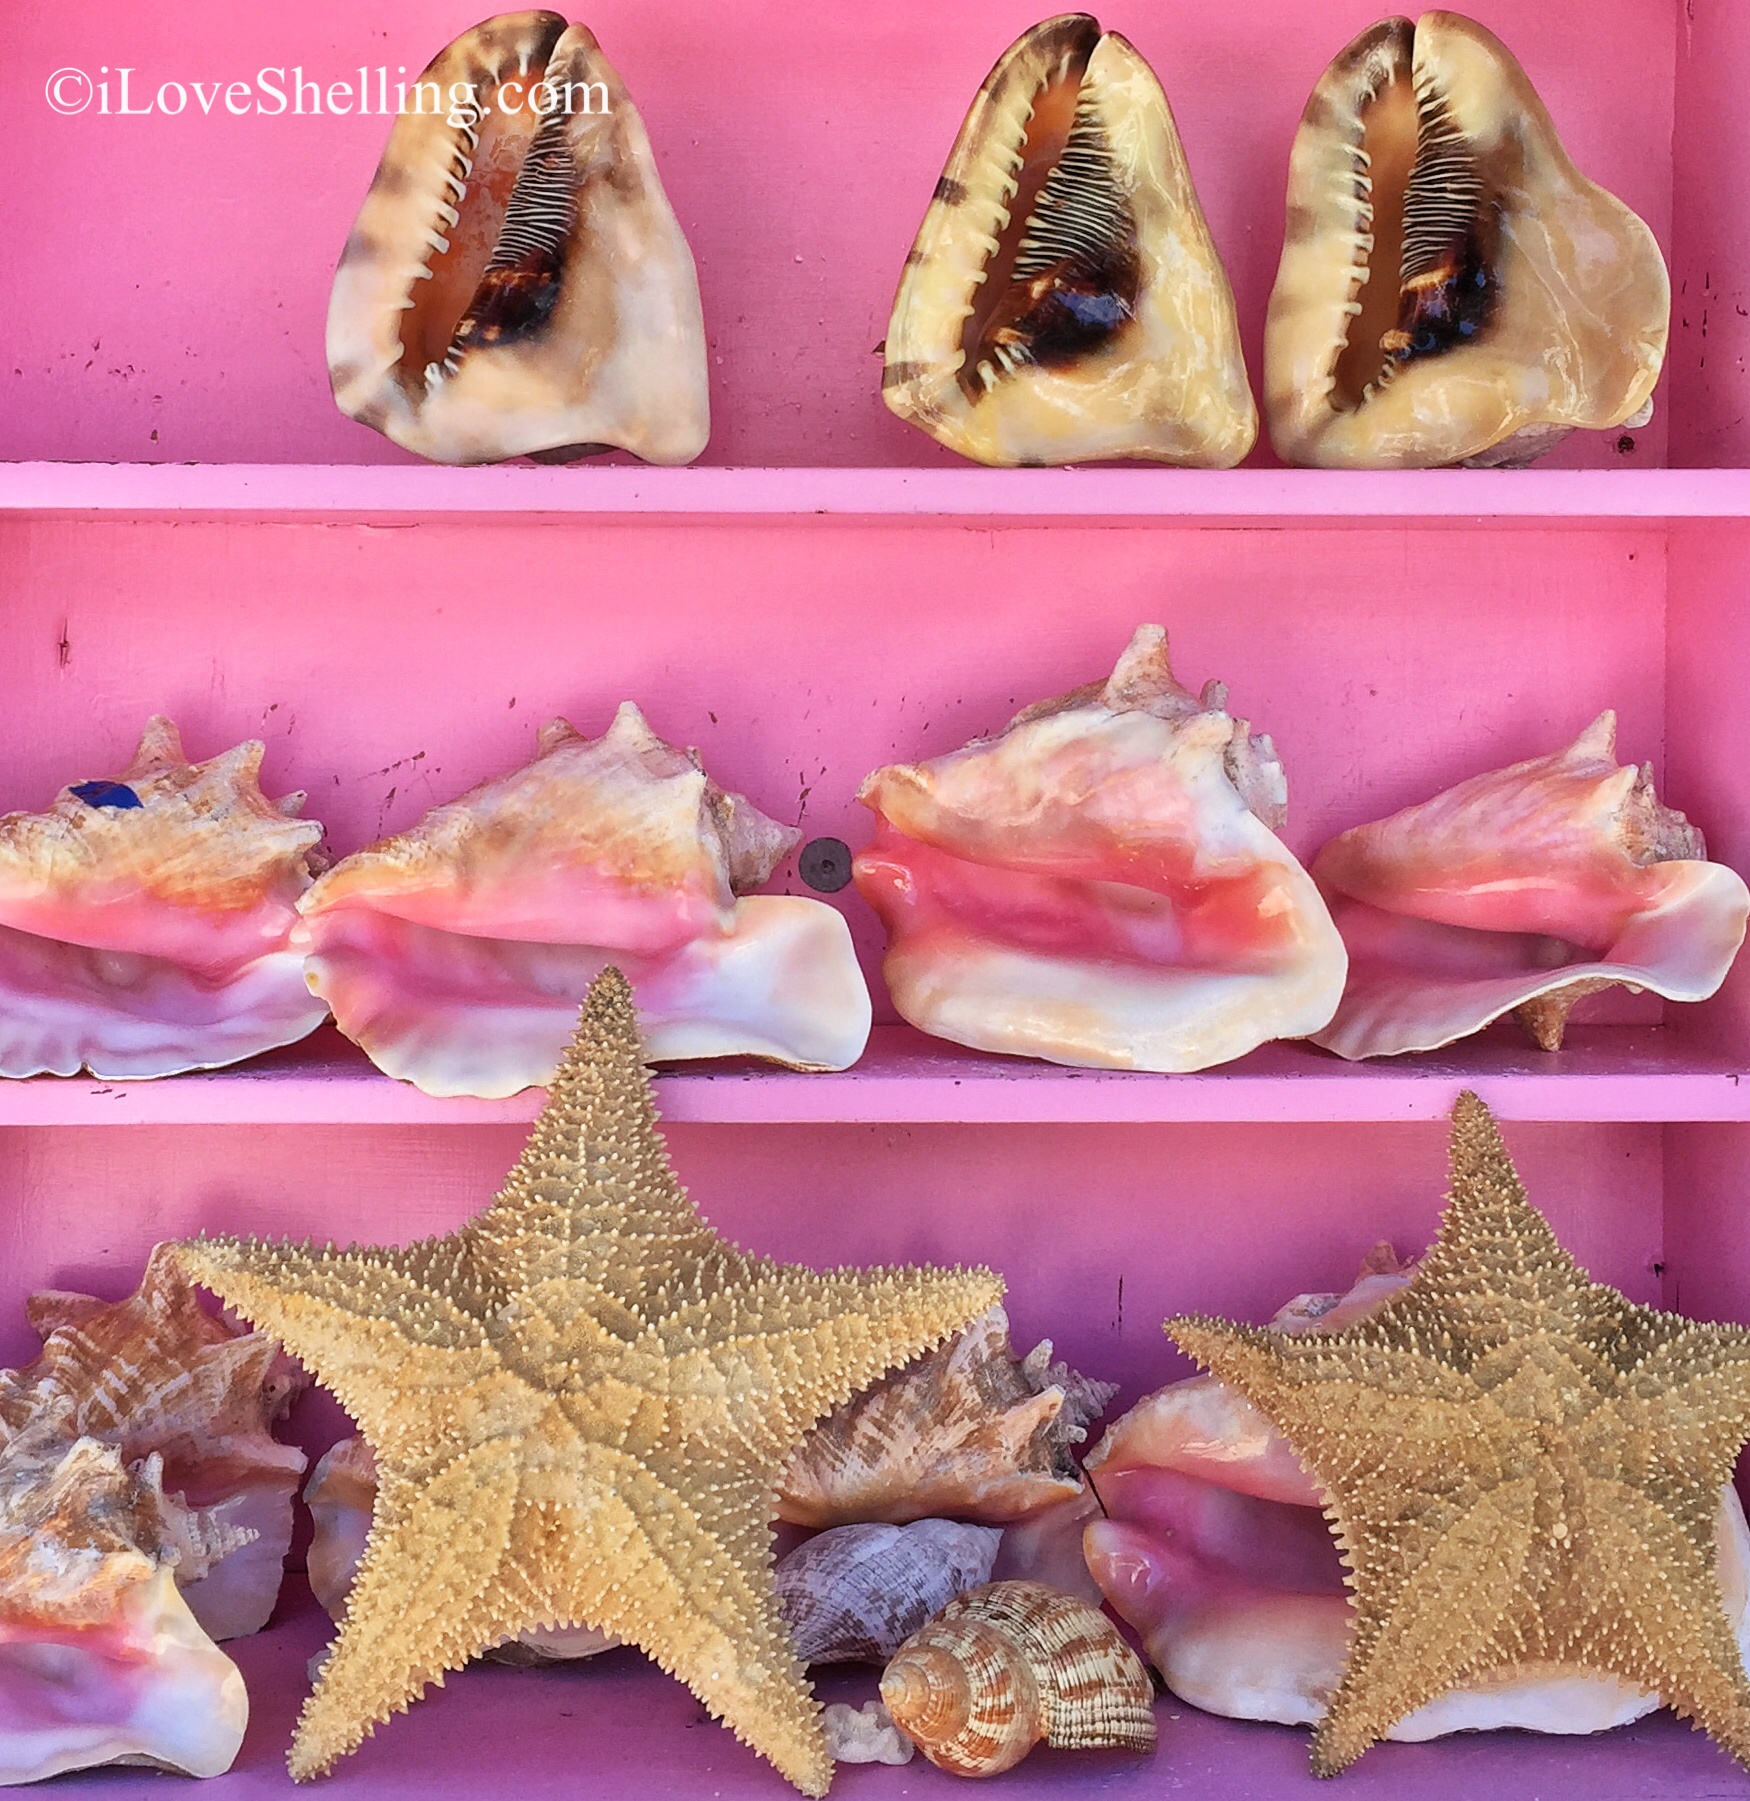 Bahamas pink sea shells and starfish